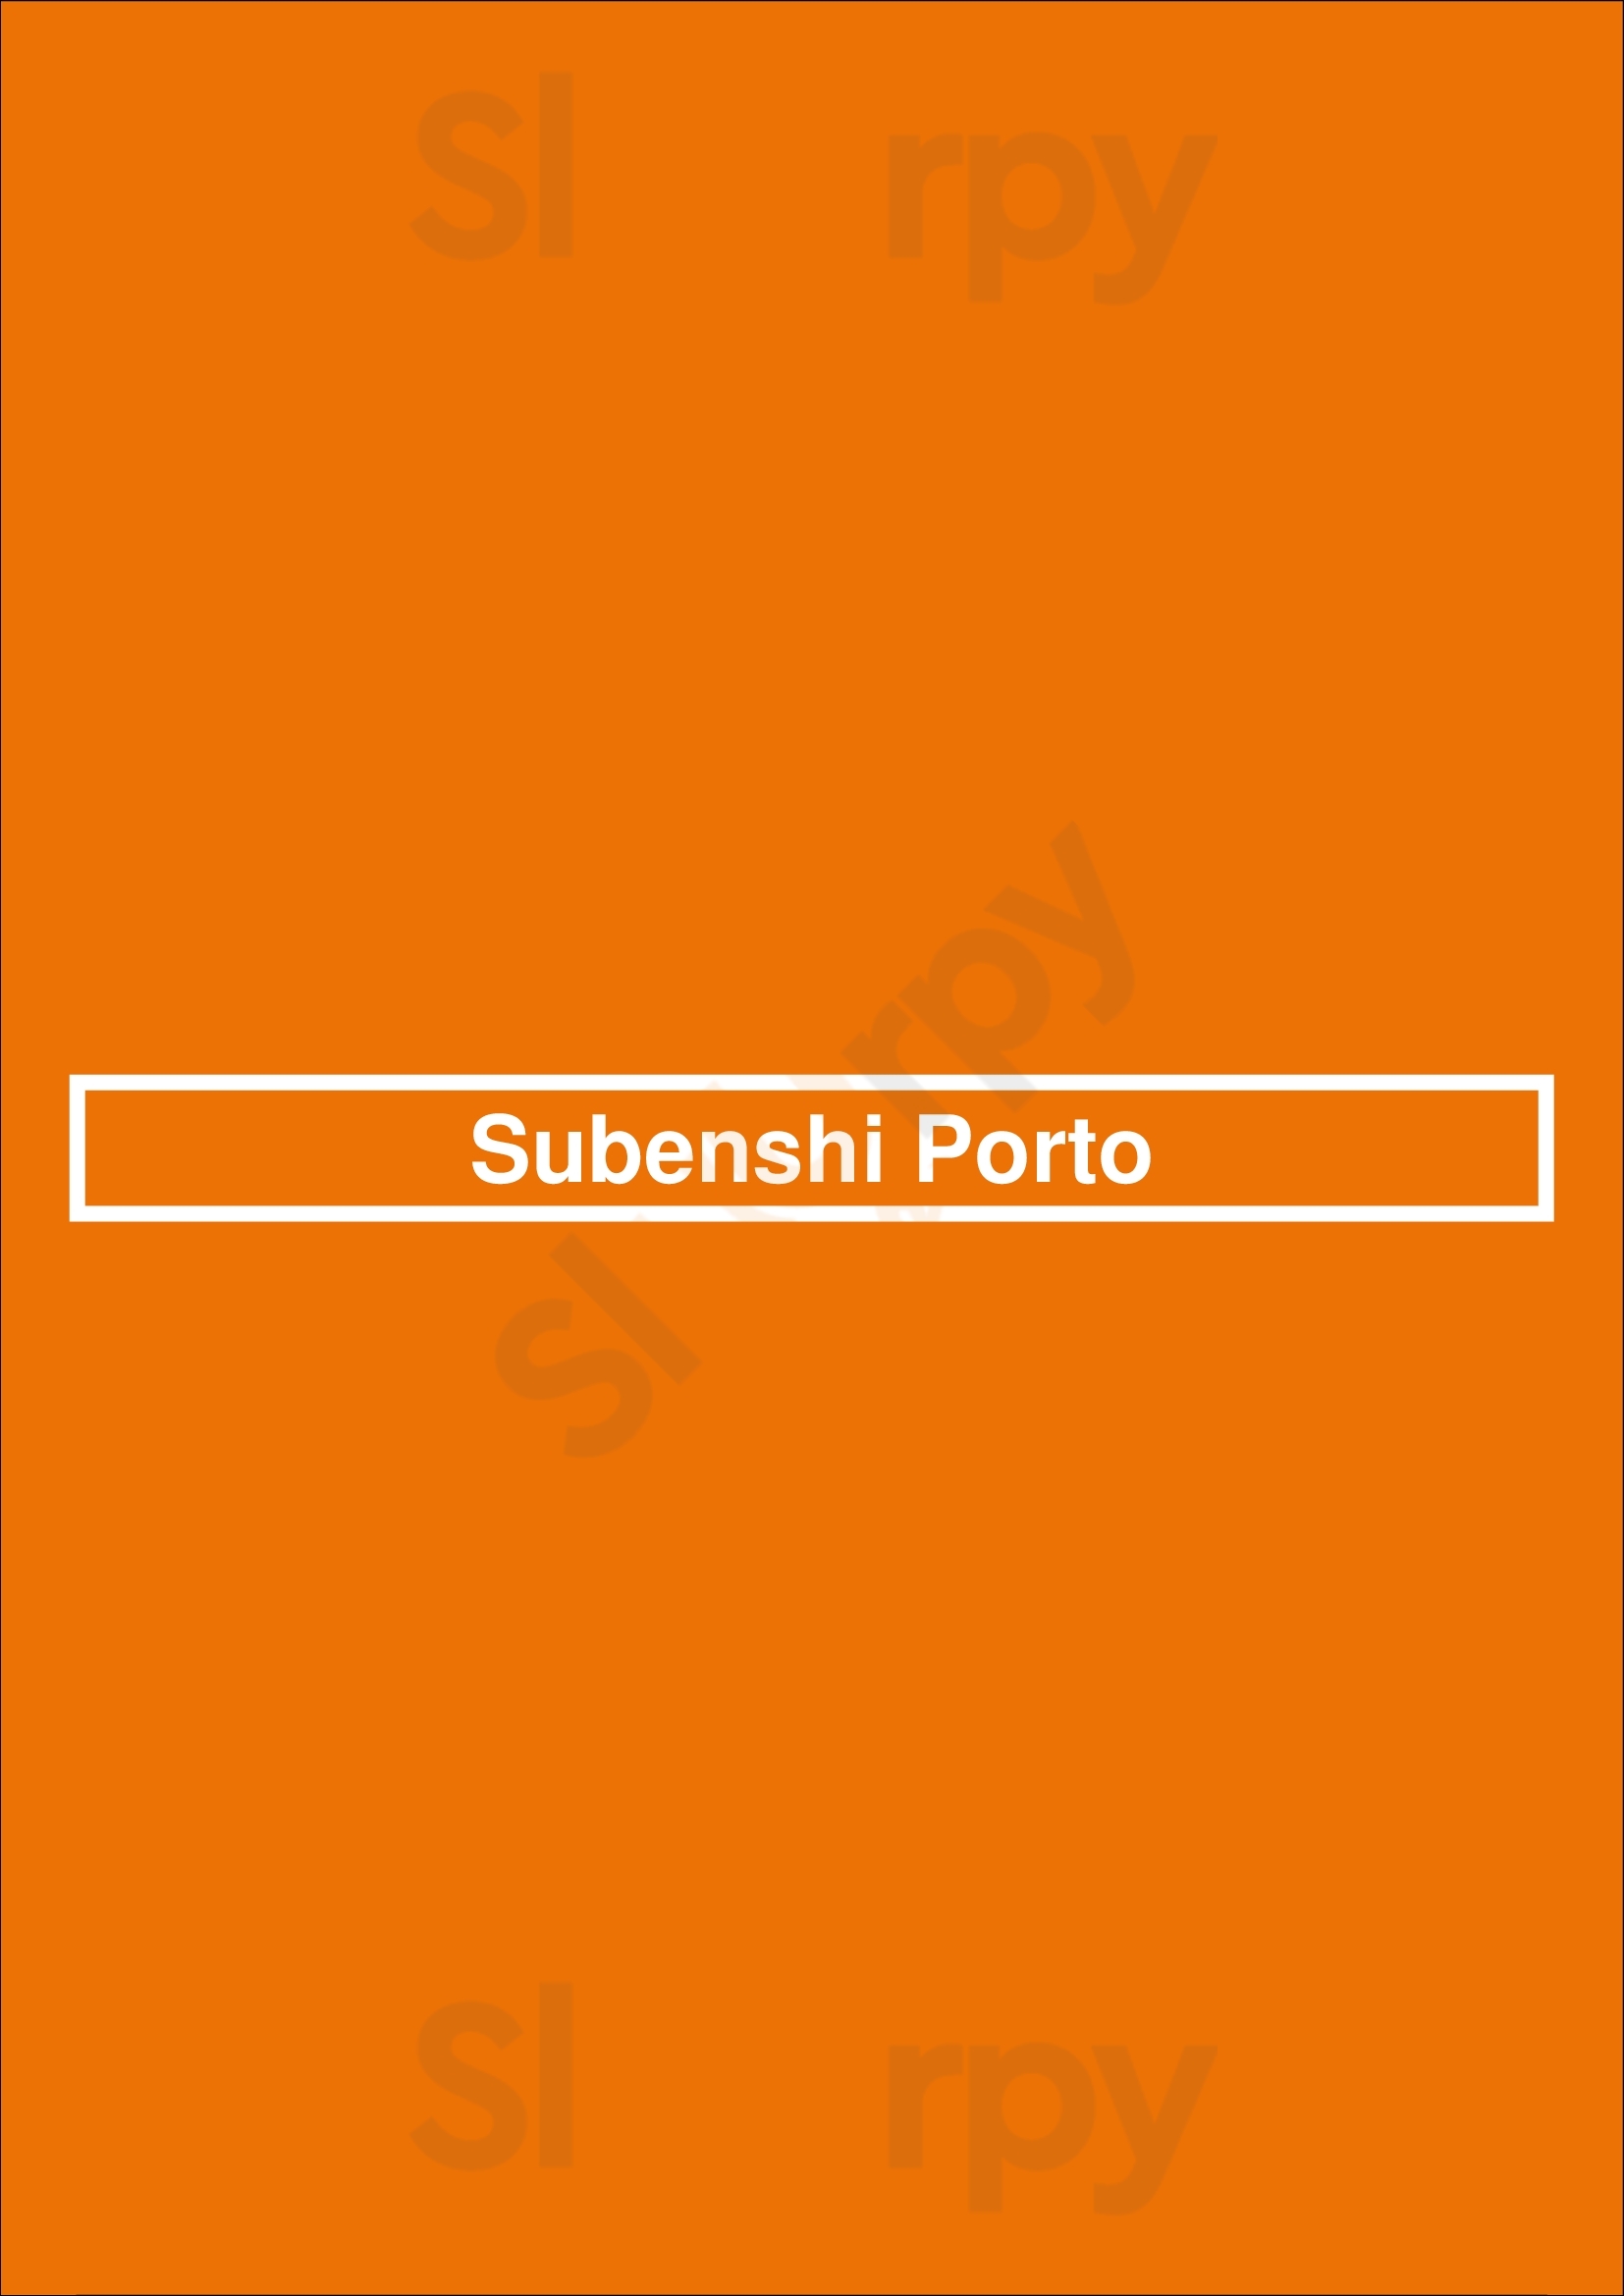 Subenshi Porto Porto Menu - 1